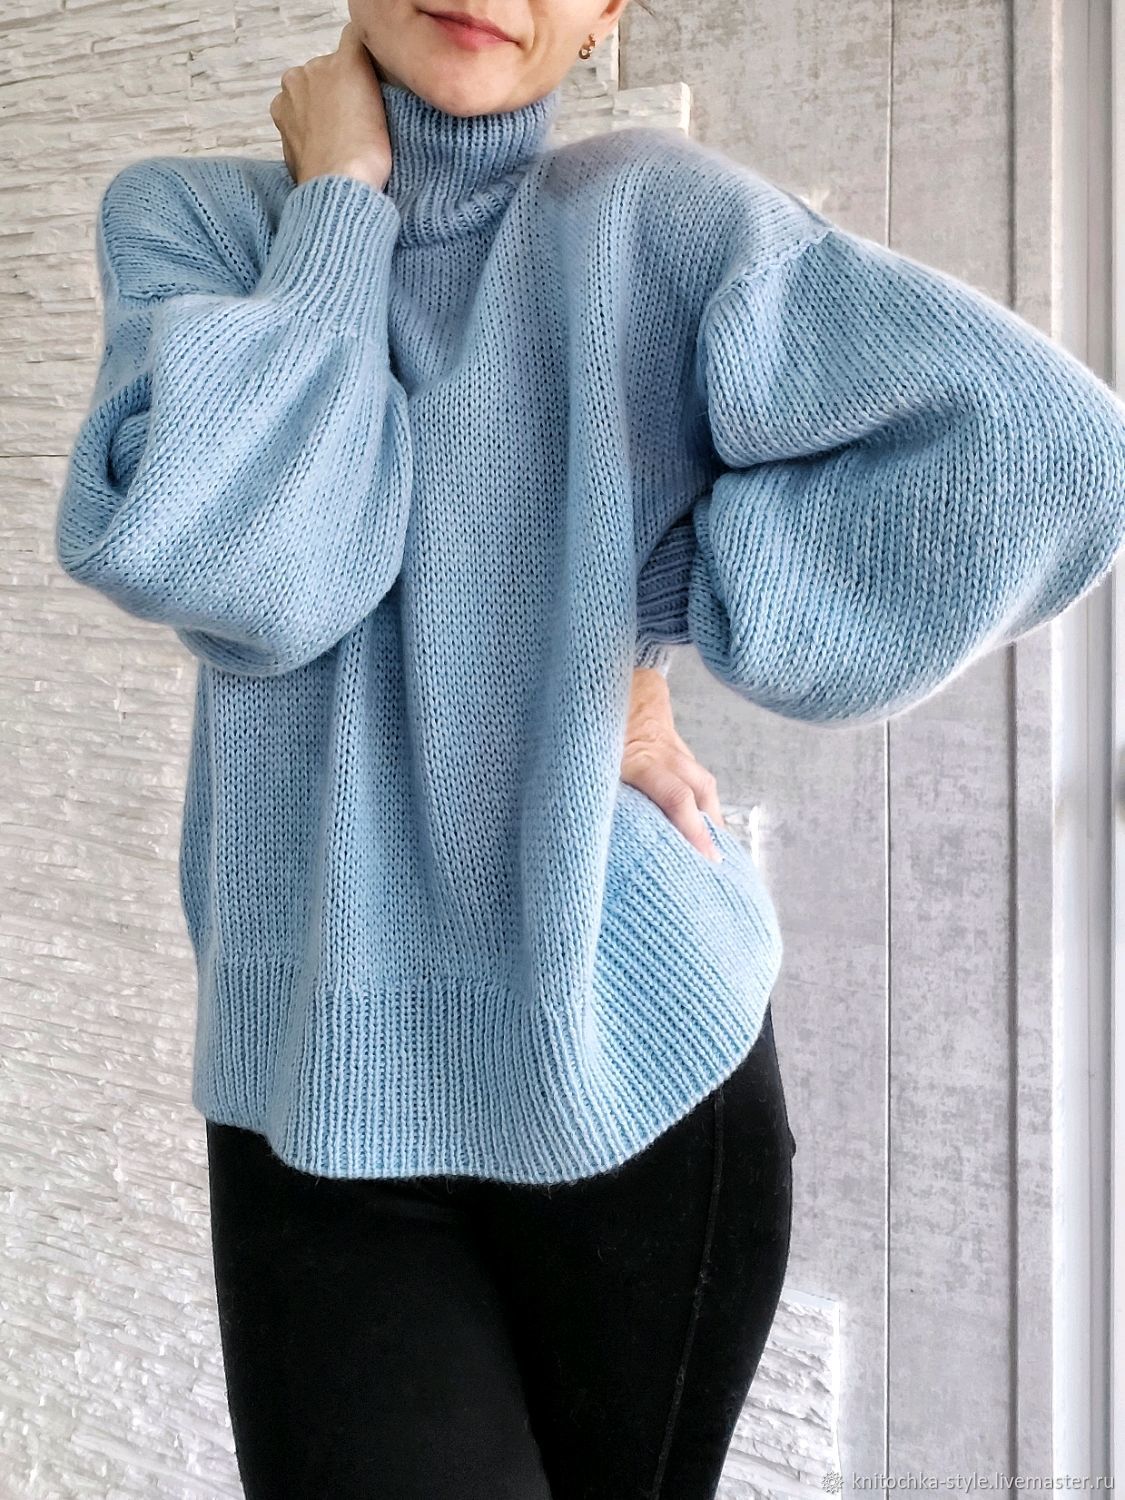 И снова самый любимый пуловер из сури альпака 🤗Пушистая фактура, капельки | Instagram